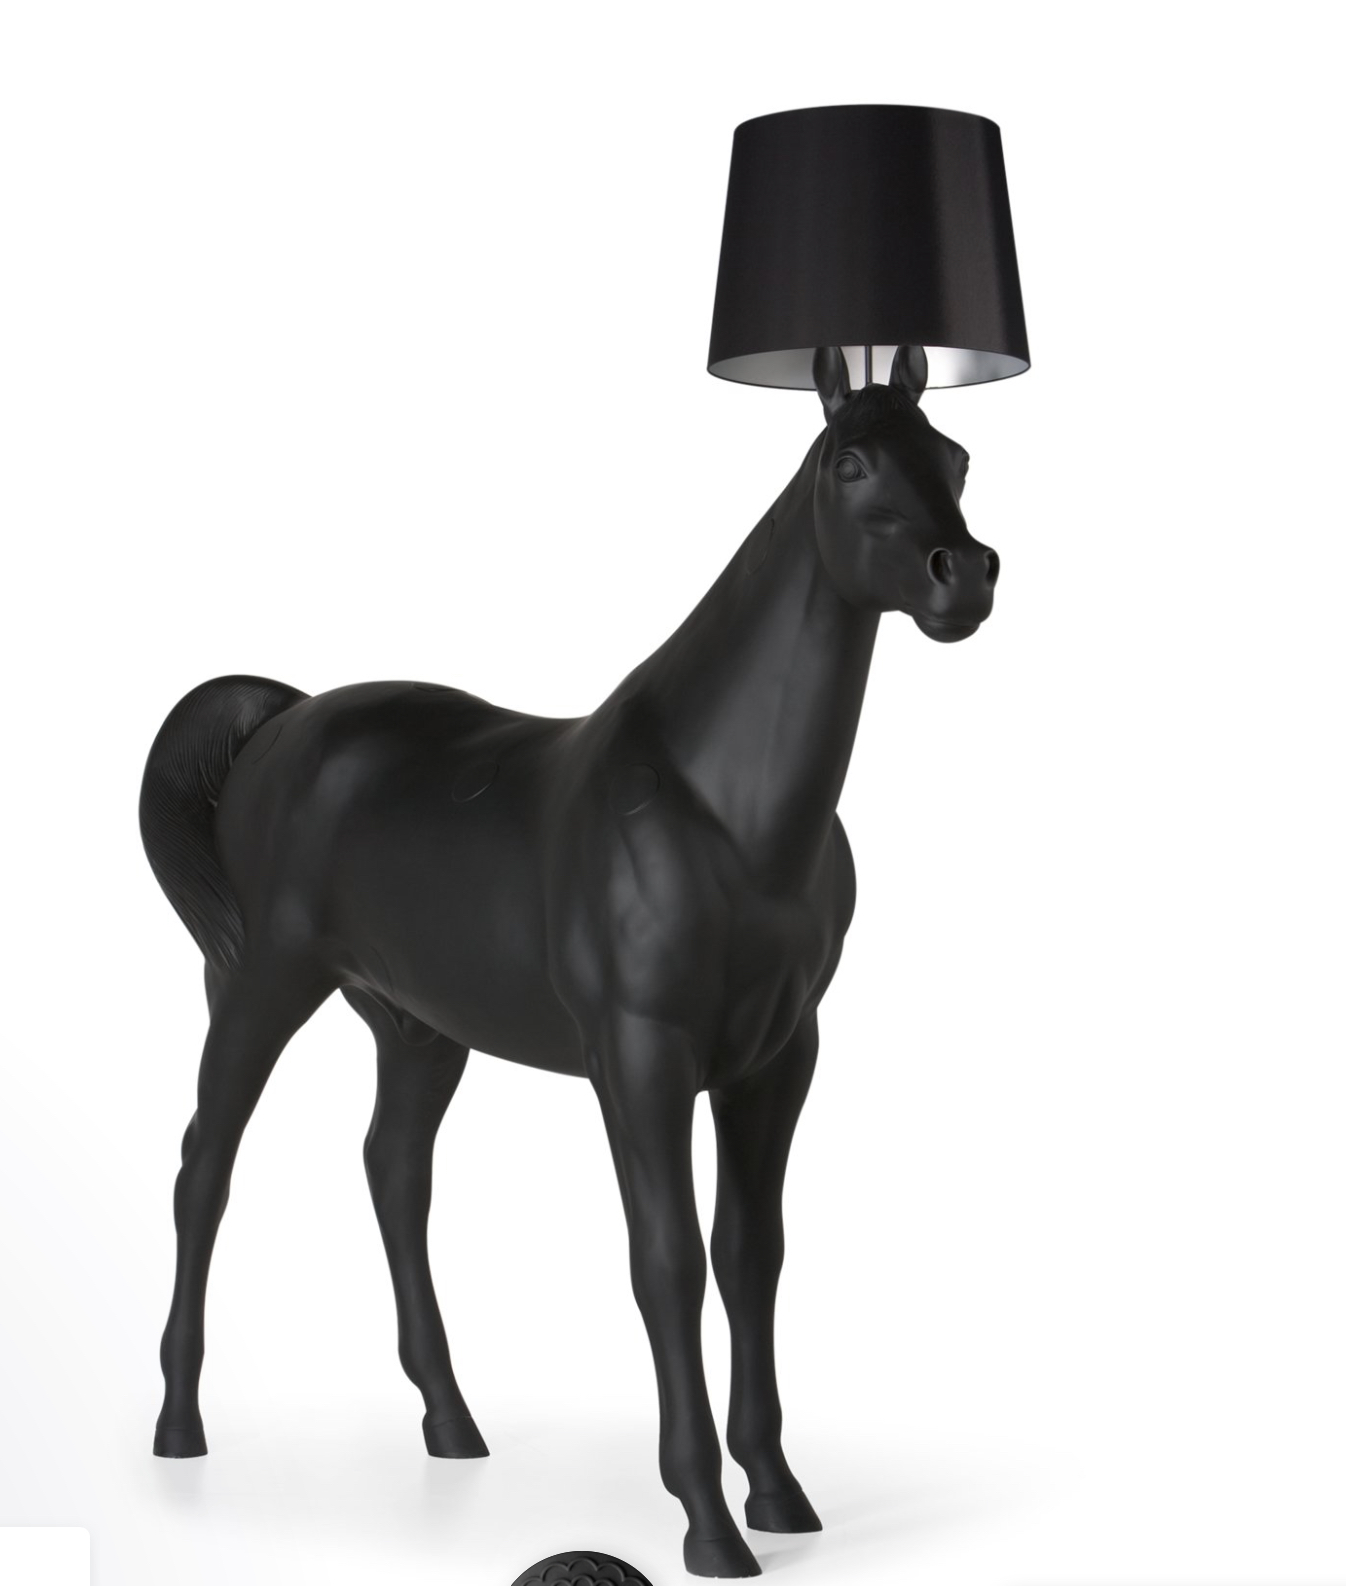 Standeluchte HORSE LAMP von moooi